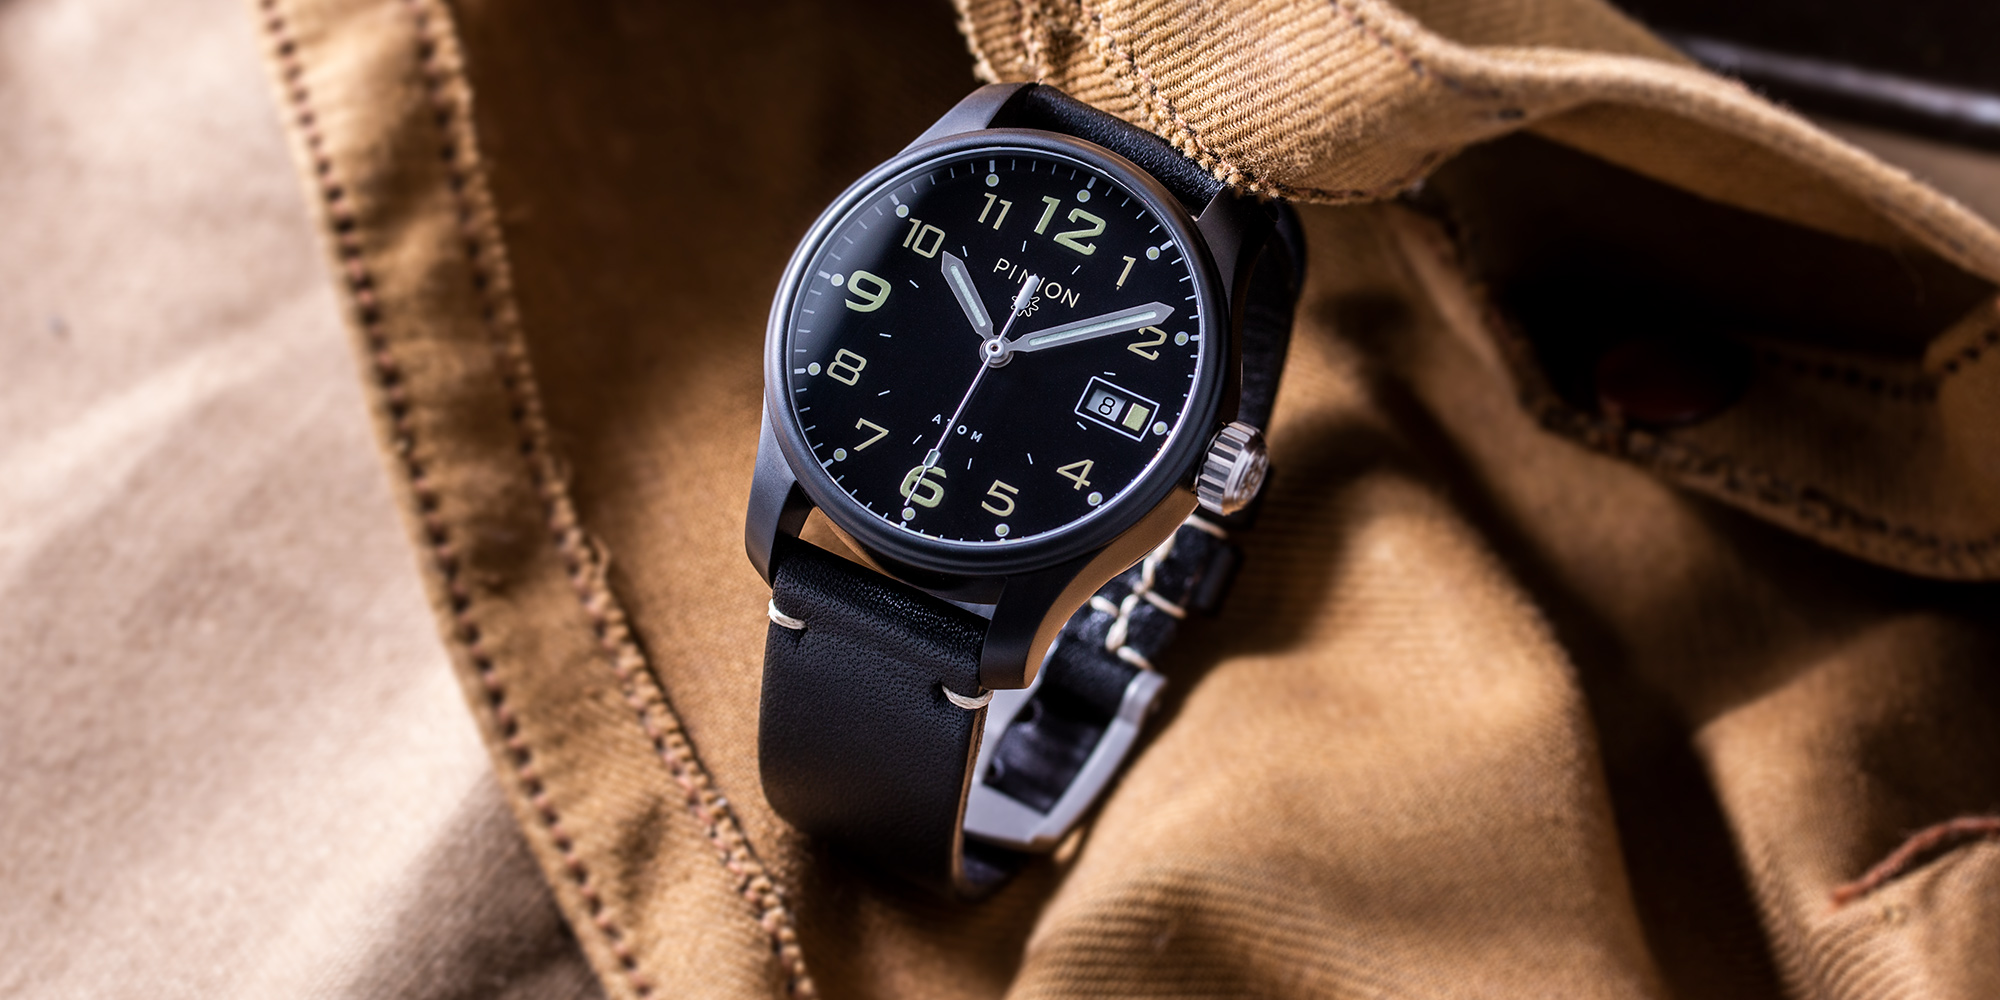 british-watches-pinion-atom-39mm-bk-black-dlc-watch-002-